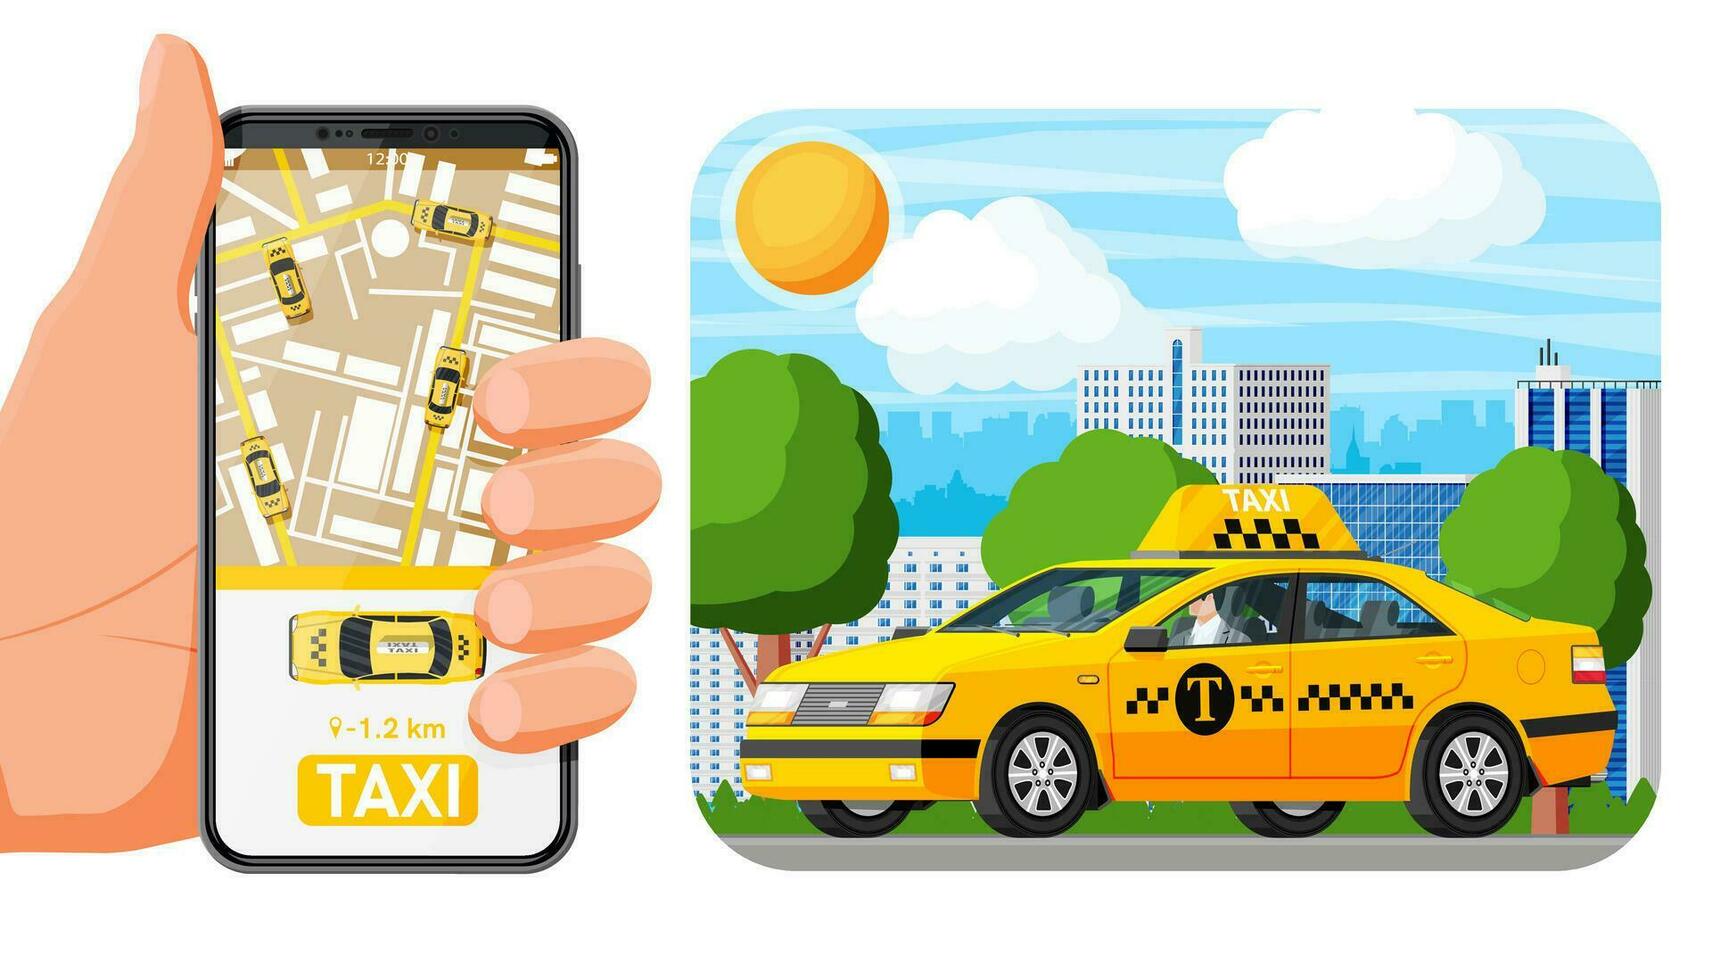 Đặt xe Taxi Nội Bài chưa bao giờ dễ đến thế: Thao tác online, giá niêm yết, đa dạng loại xe - Ảnh 1.